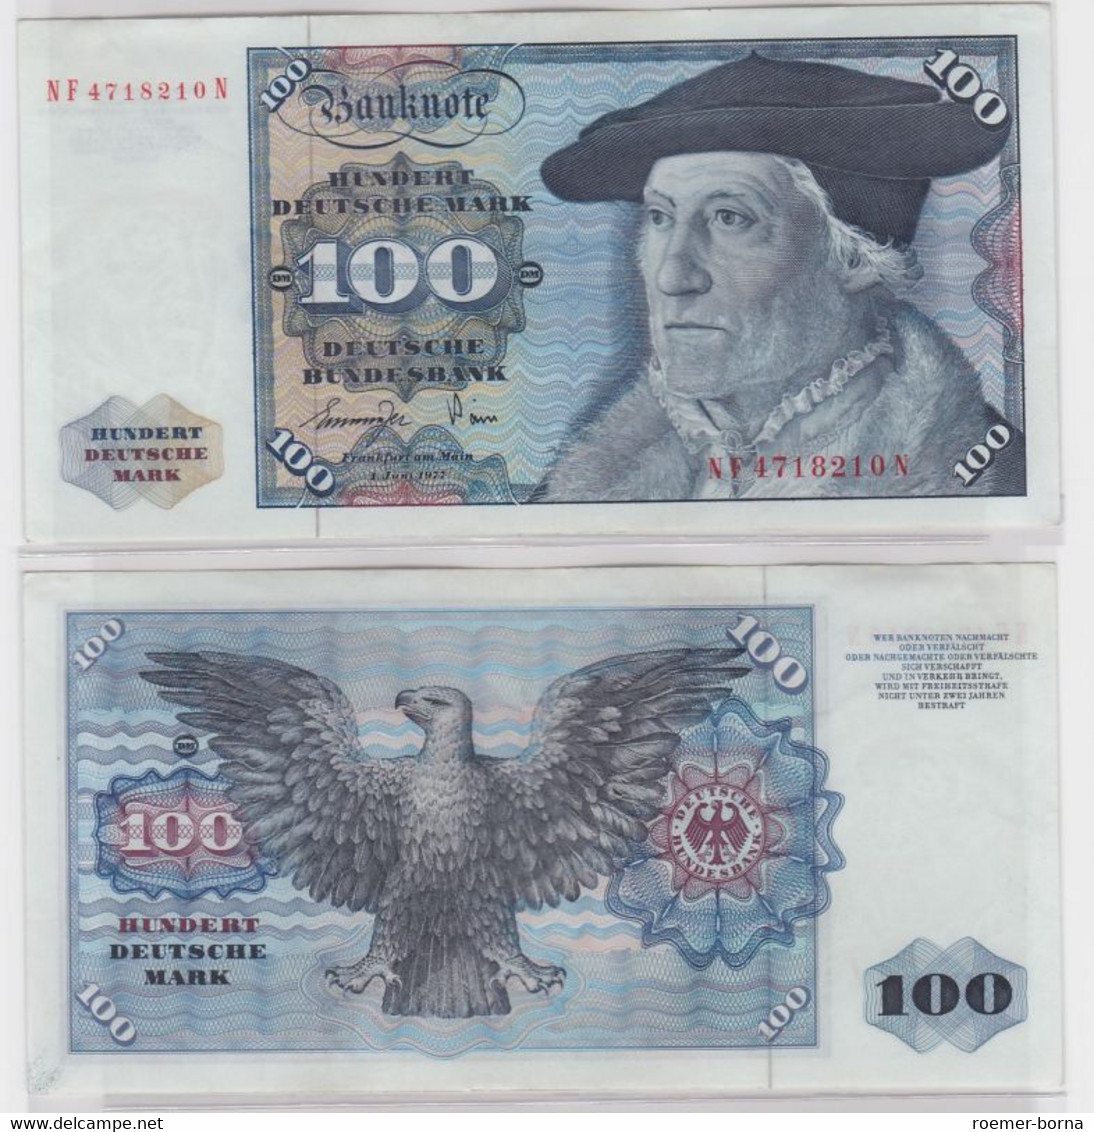 T146067 Banknote 100 DM Deutsche Mark Ro 278a Schein 1.Juni 1977 KN NF 4718210 N - 100 Deutsche Mark